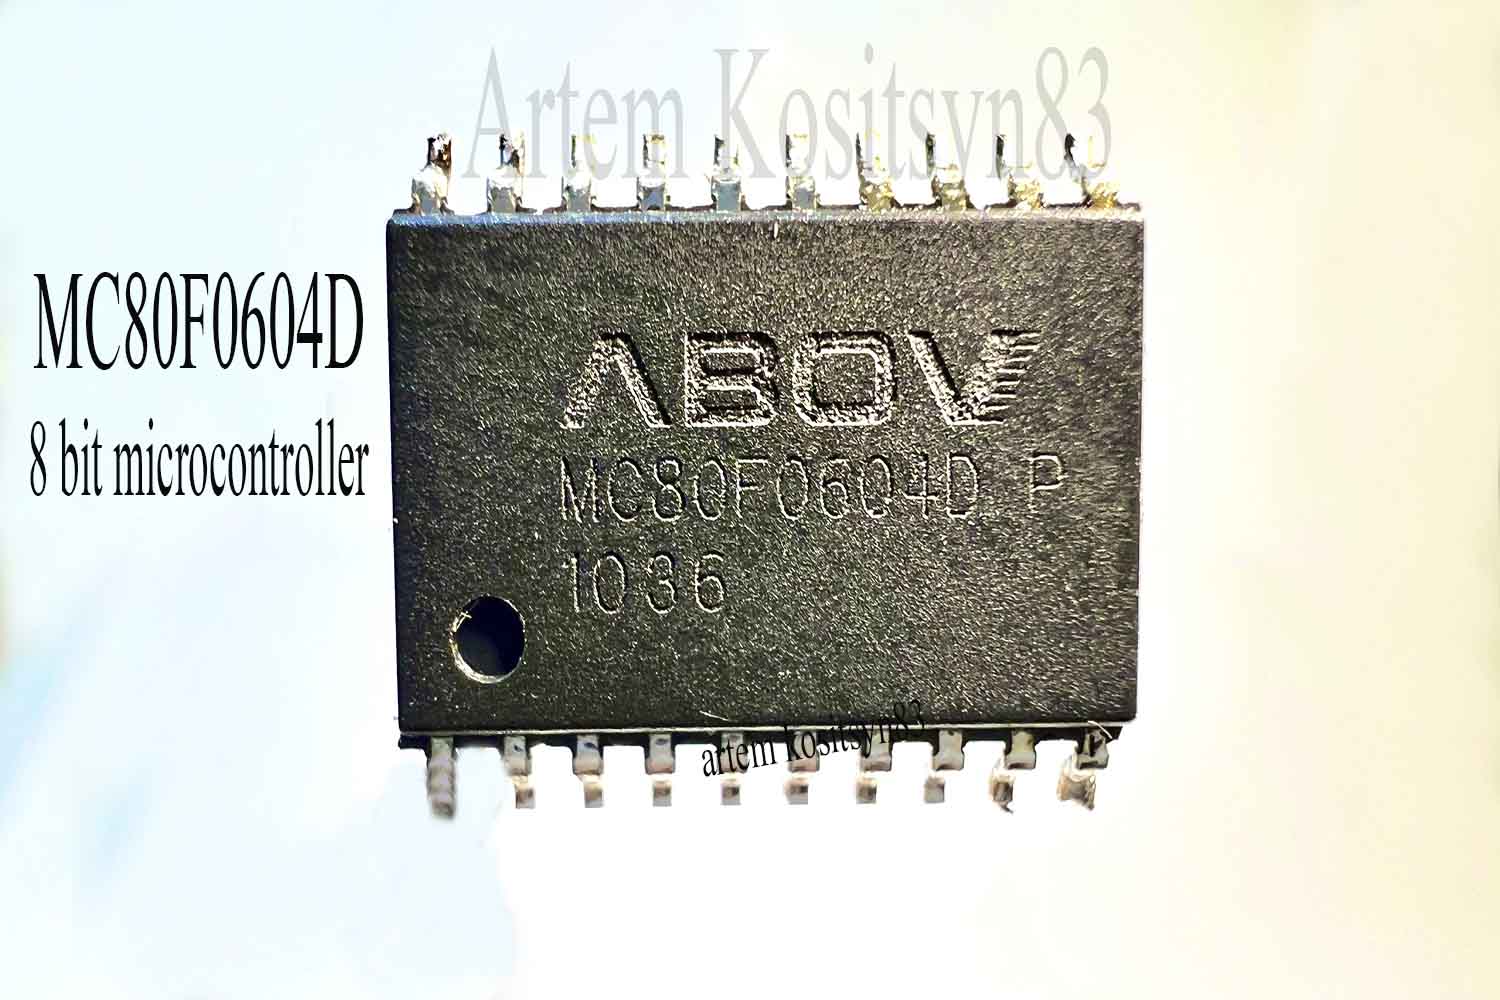 Подробнее о статье MC80F0604D.8 bit single chip microcontroller